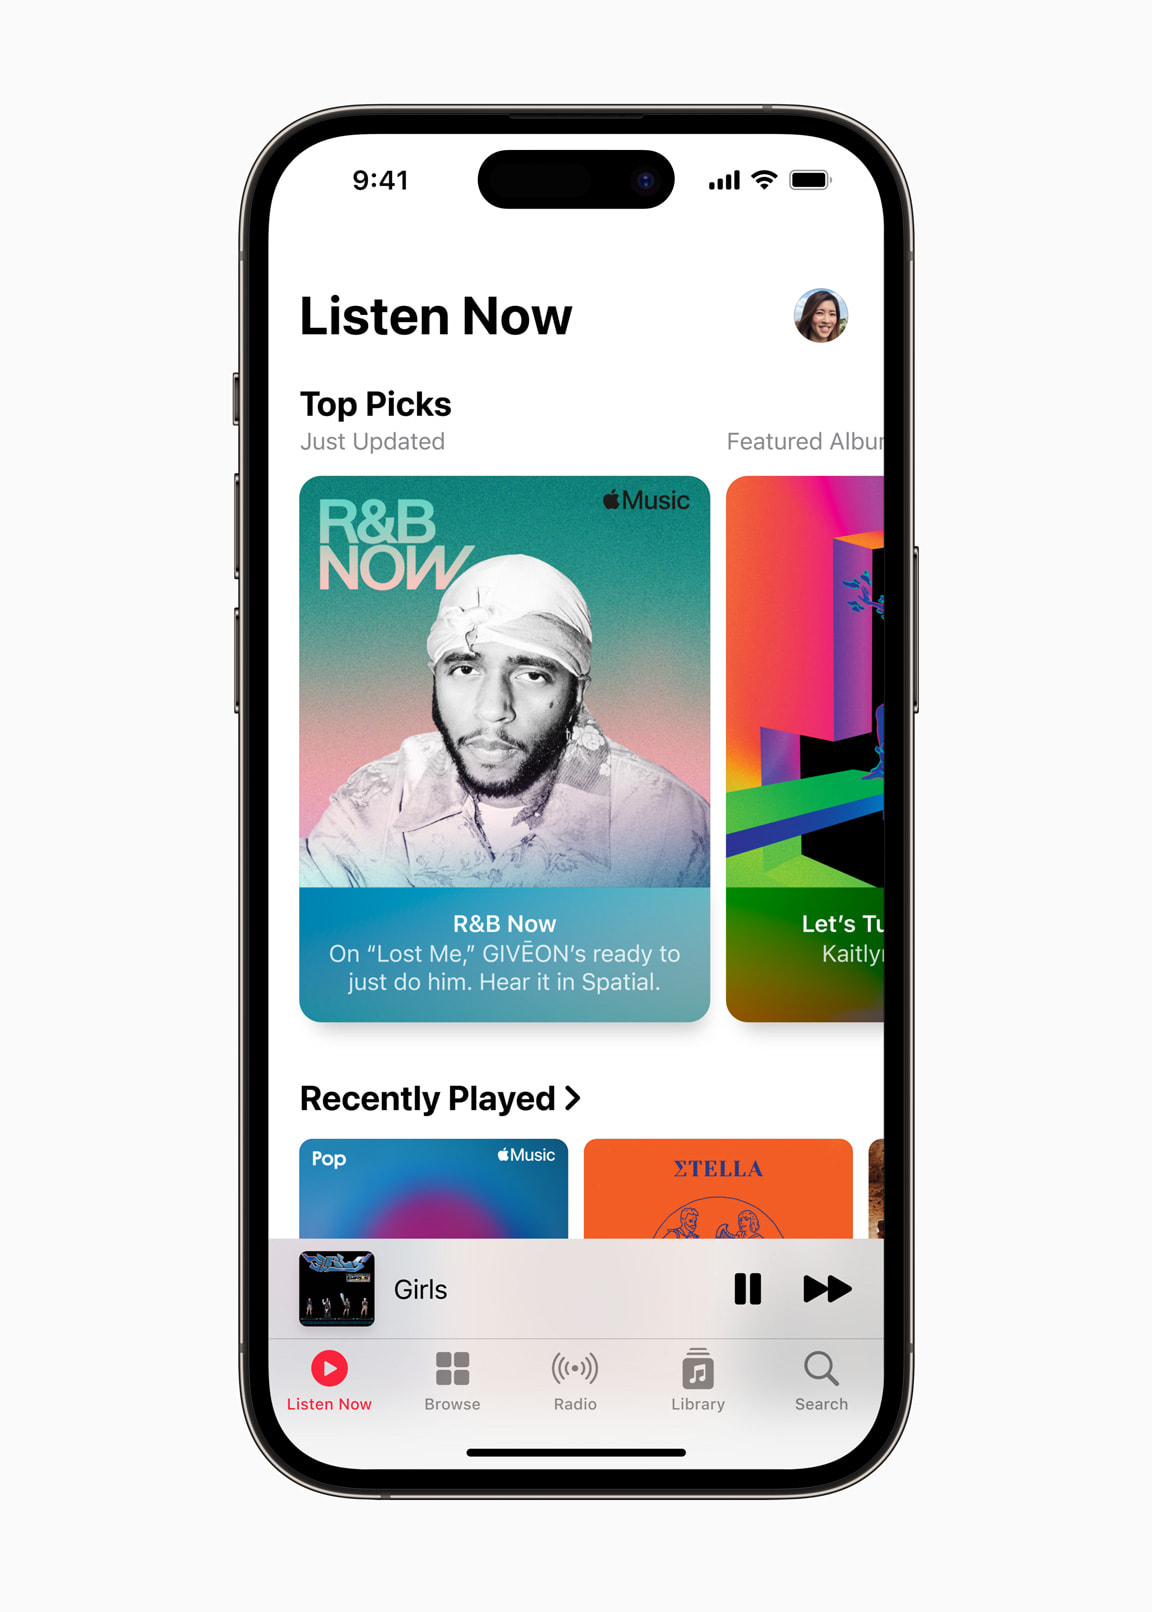 第一億首�曲在 Apple Music 上架，蘋果將強化人工編排選曲、推薦更多好音樂給聽眾